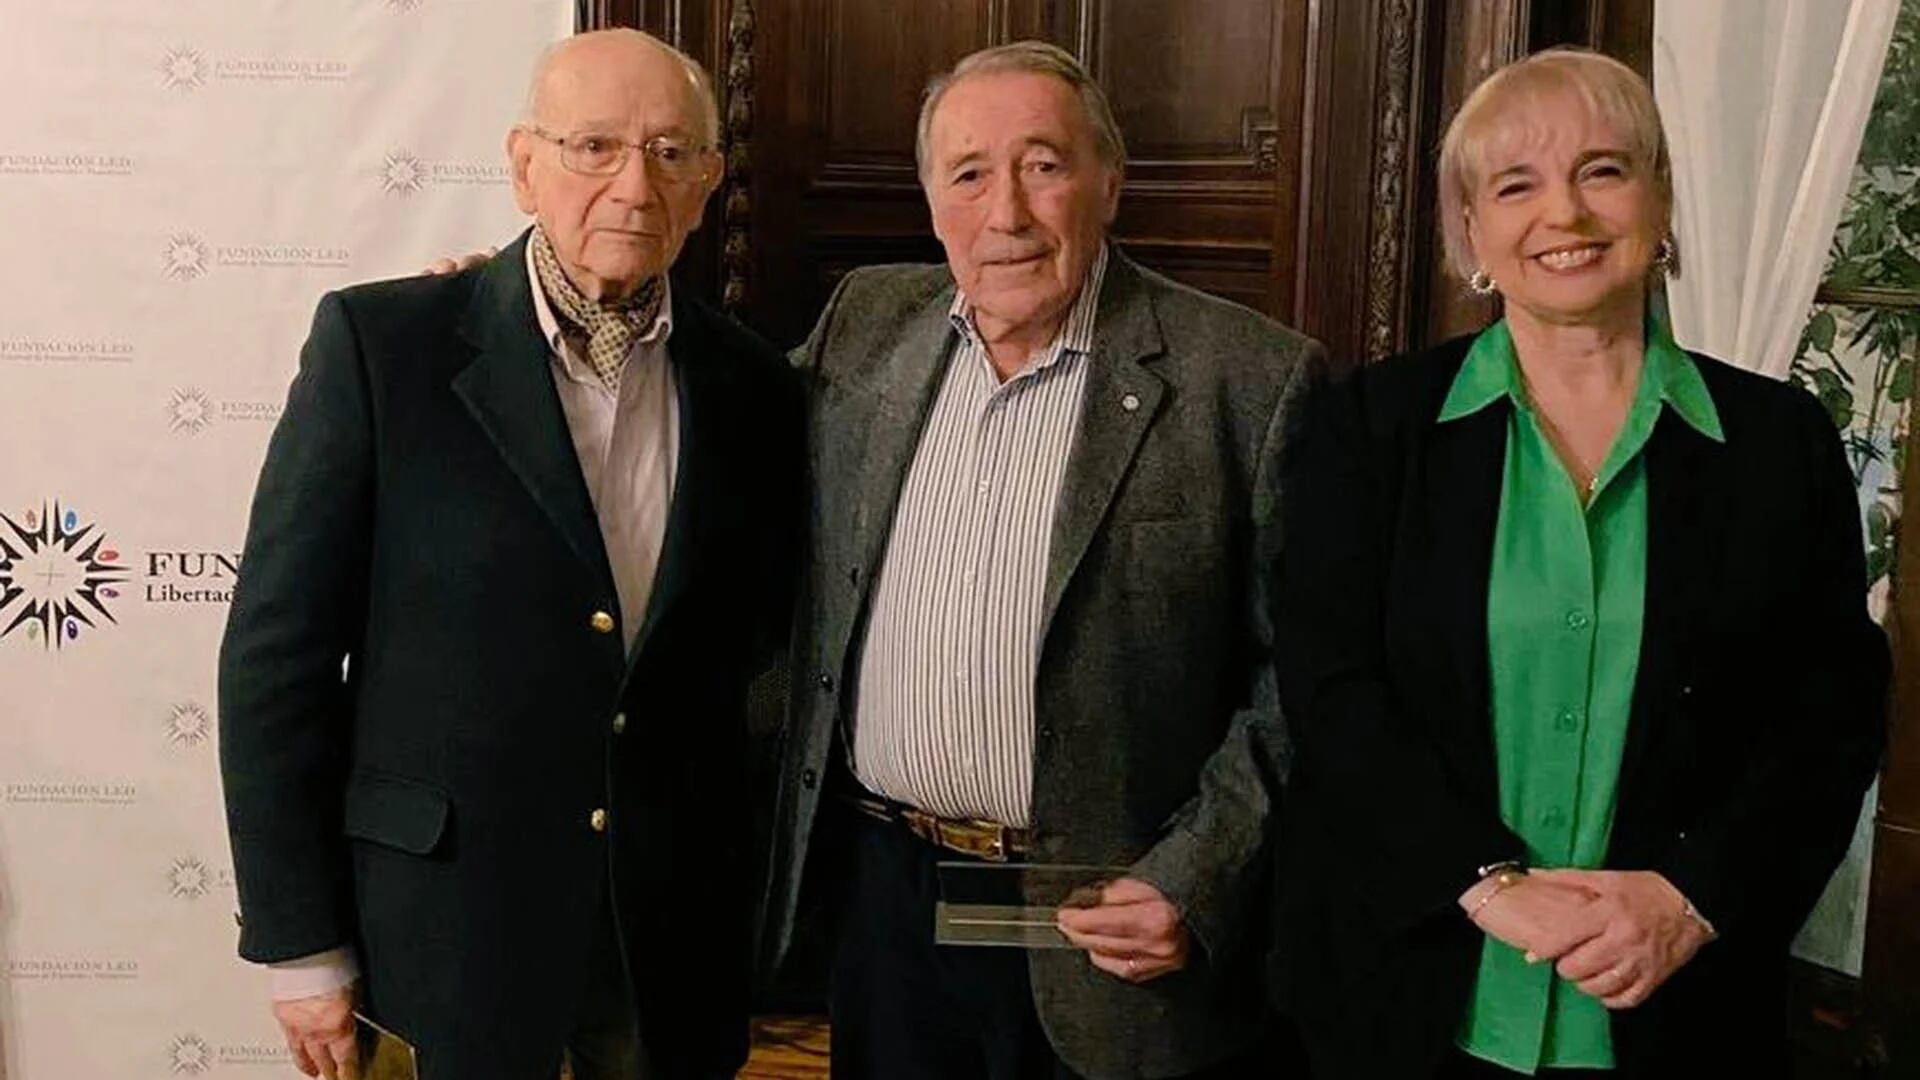 El periodista José Ignacio López y el abogado Félix Loñ fueron reconocidos en su labor por la libertad de expresión